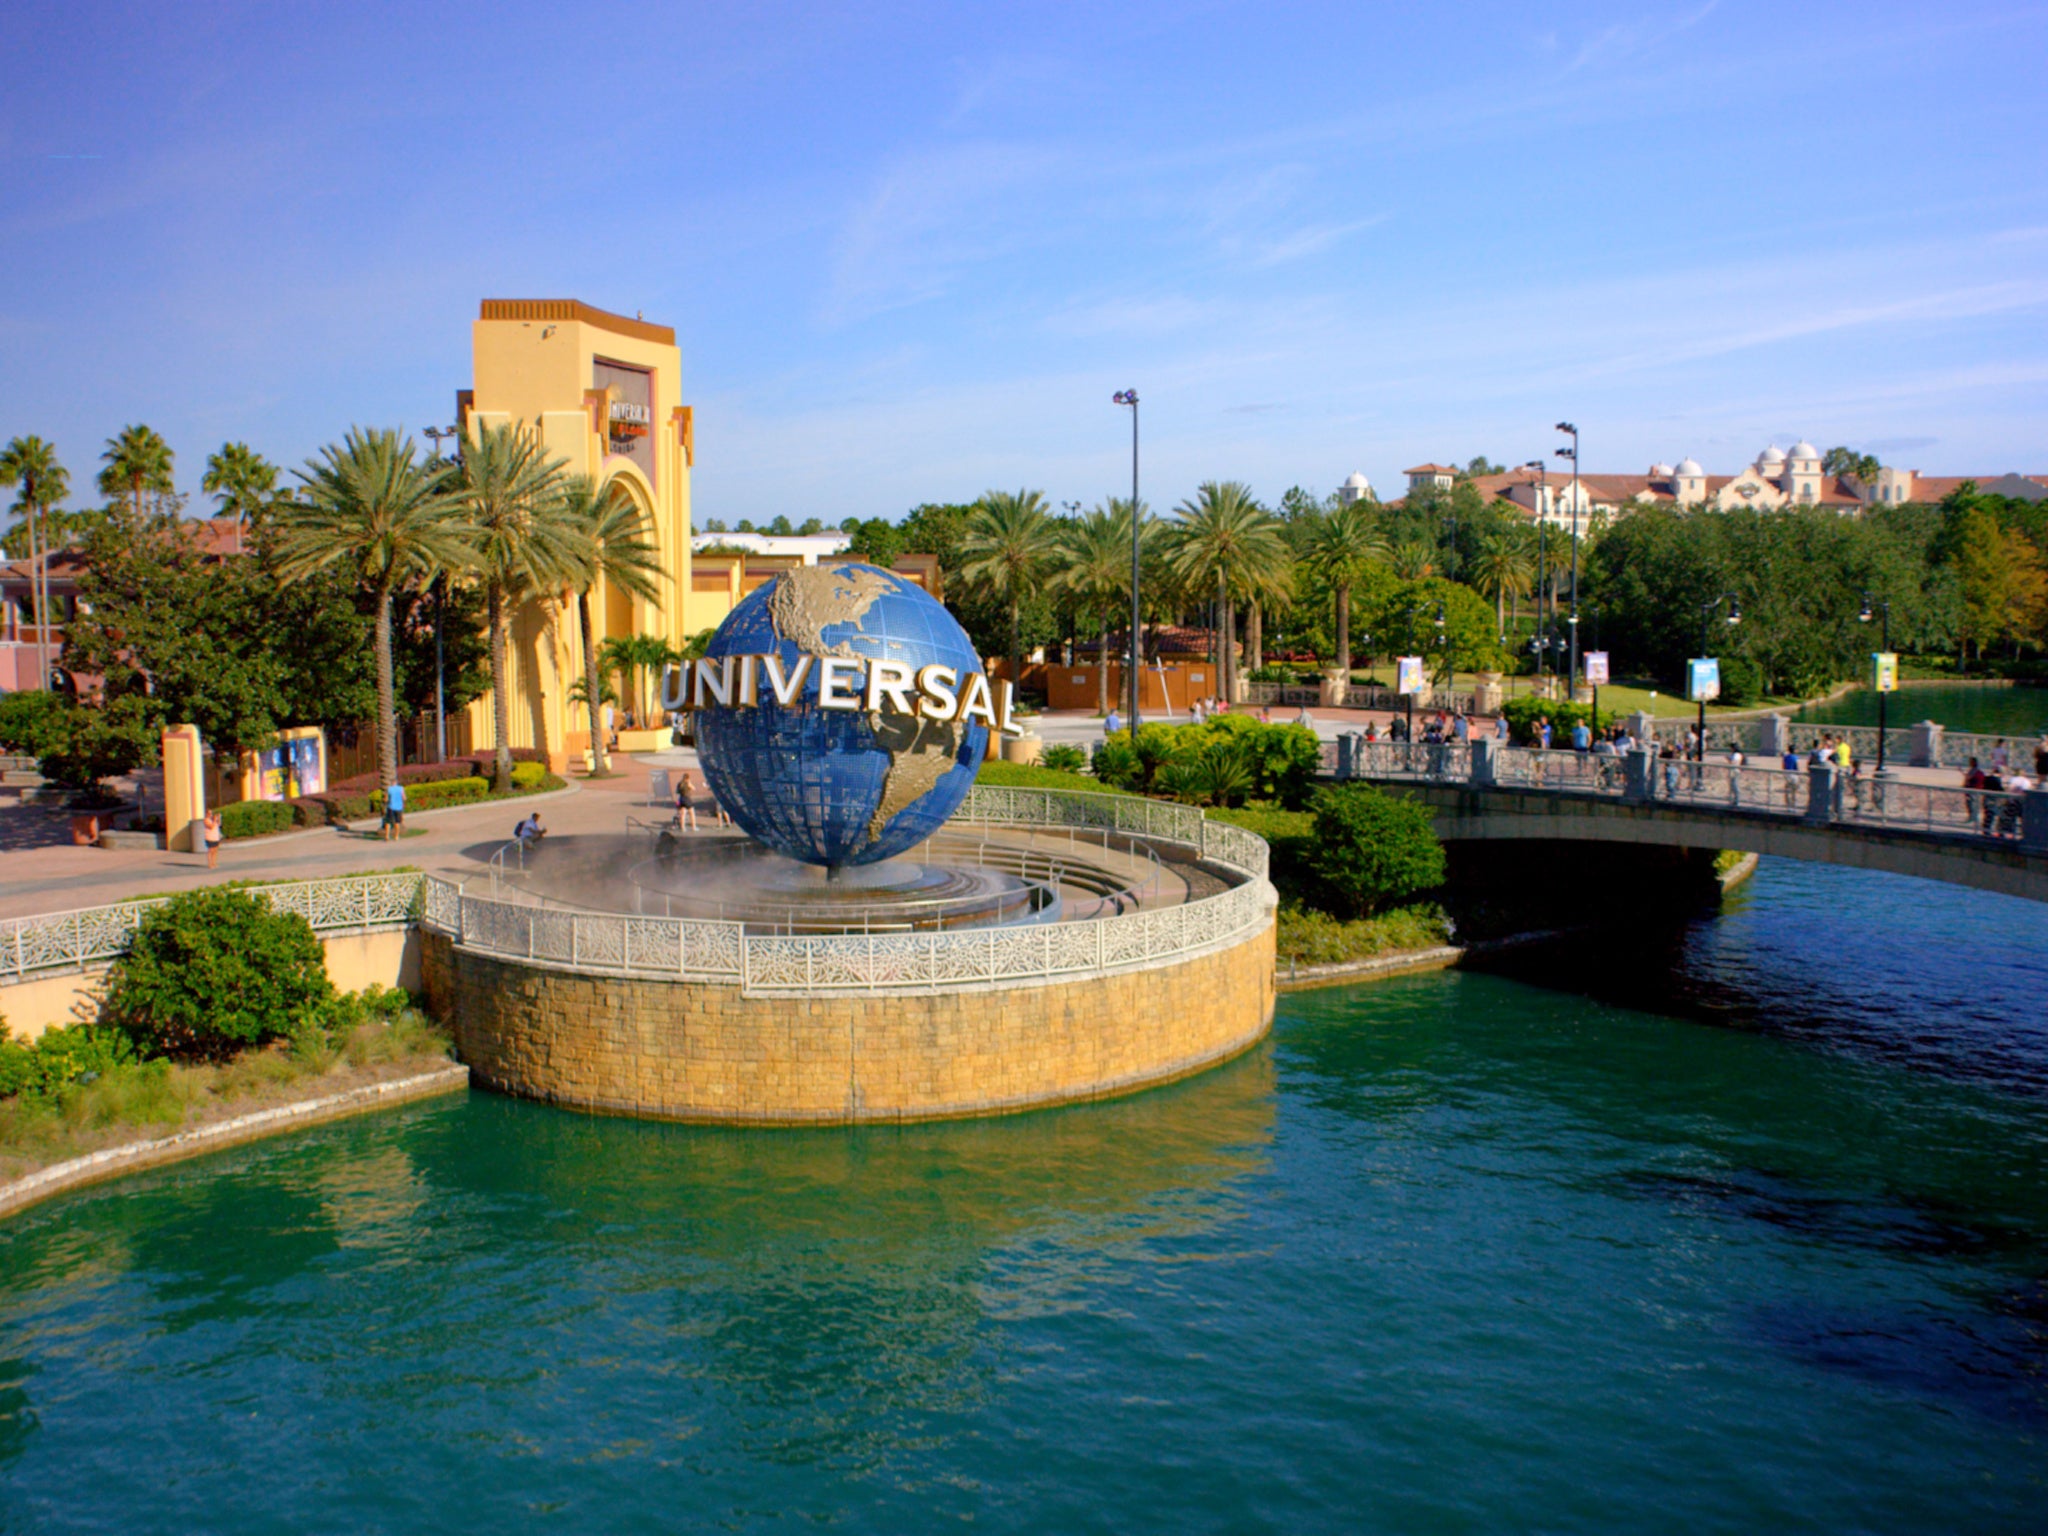 Universal Studios has been welcoming visitors since 1990